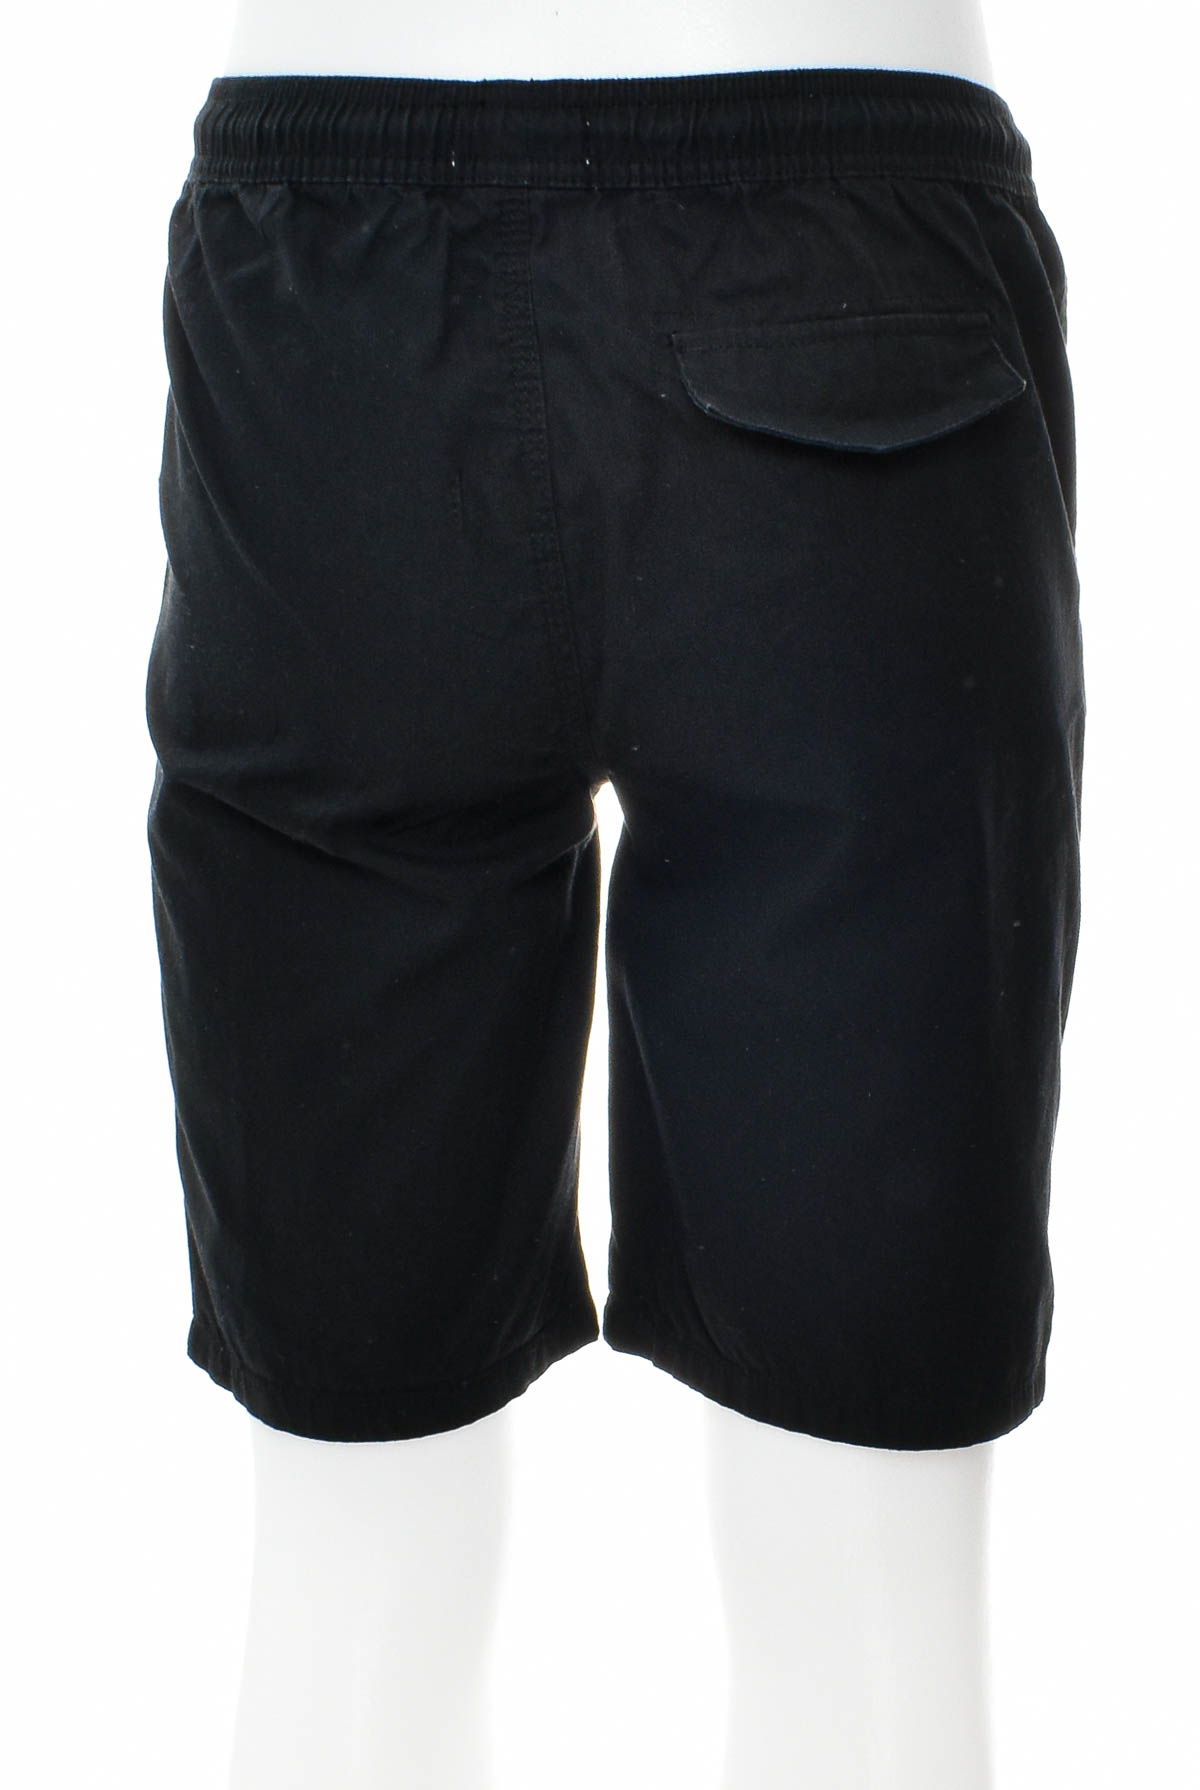 Pantaloni scurți pentru băiat - PRIMARK - 1